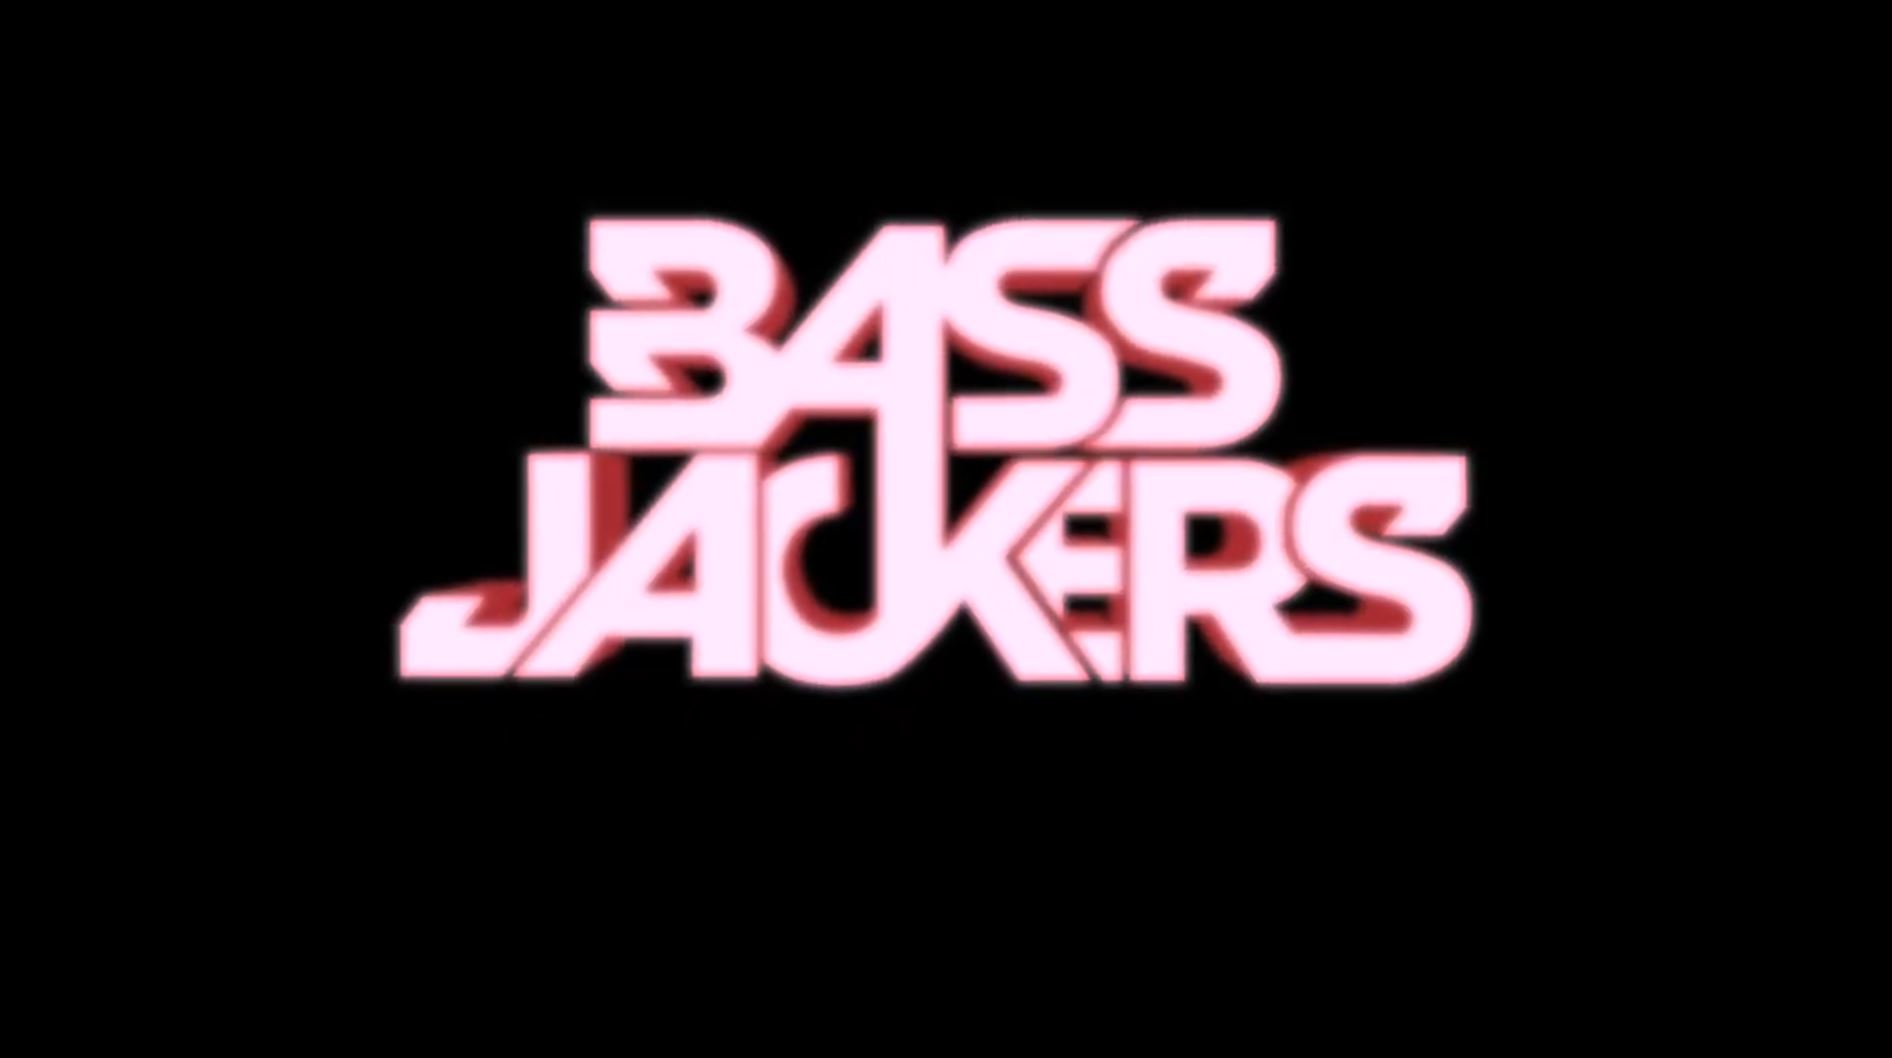 Bassjackers at Supperclub LA